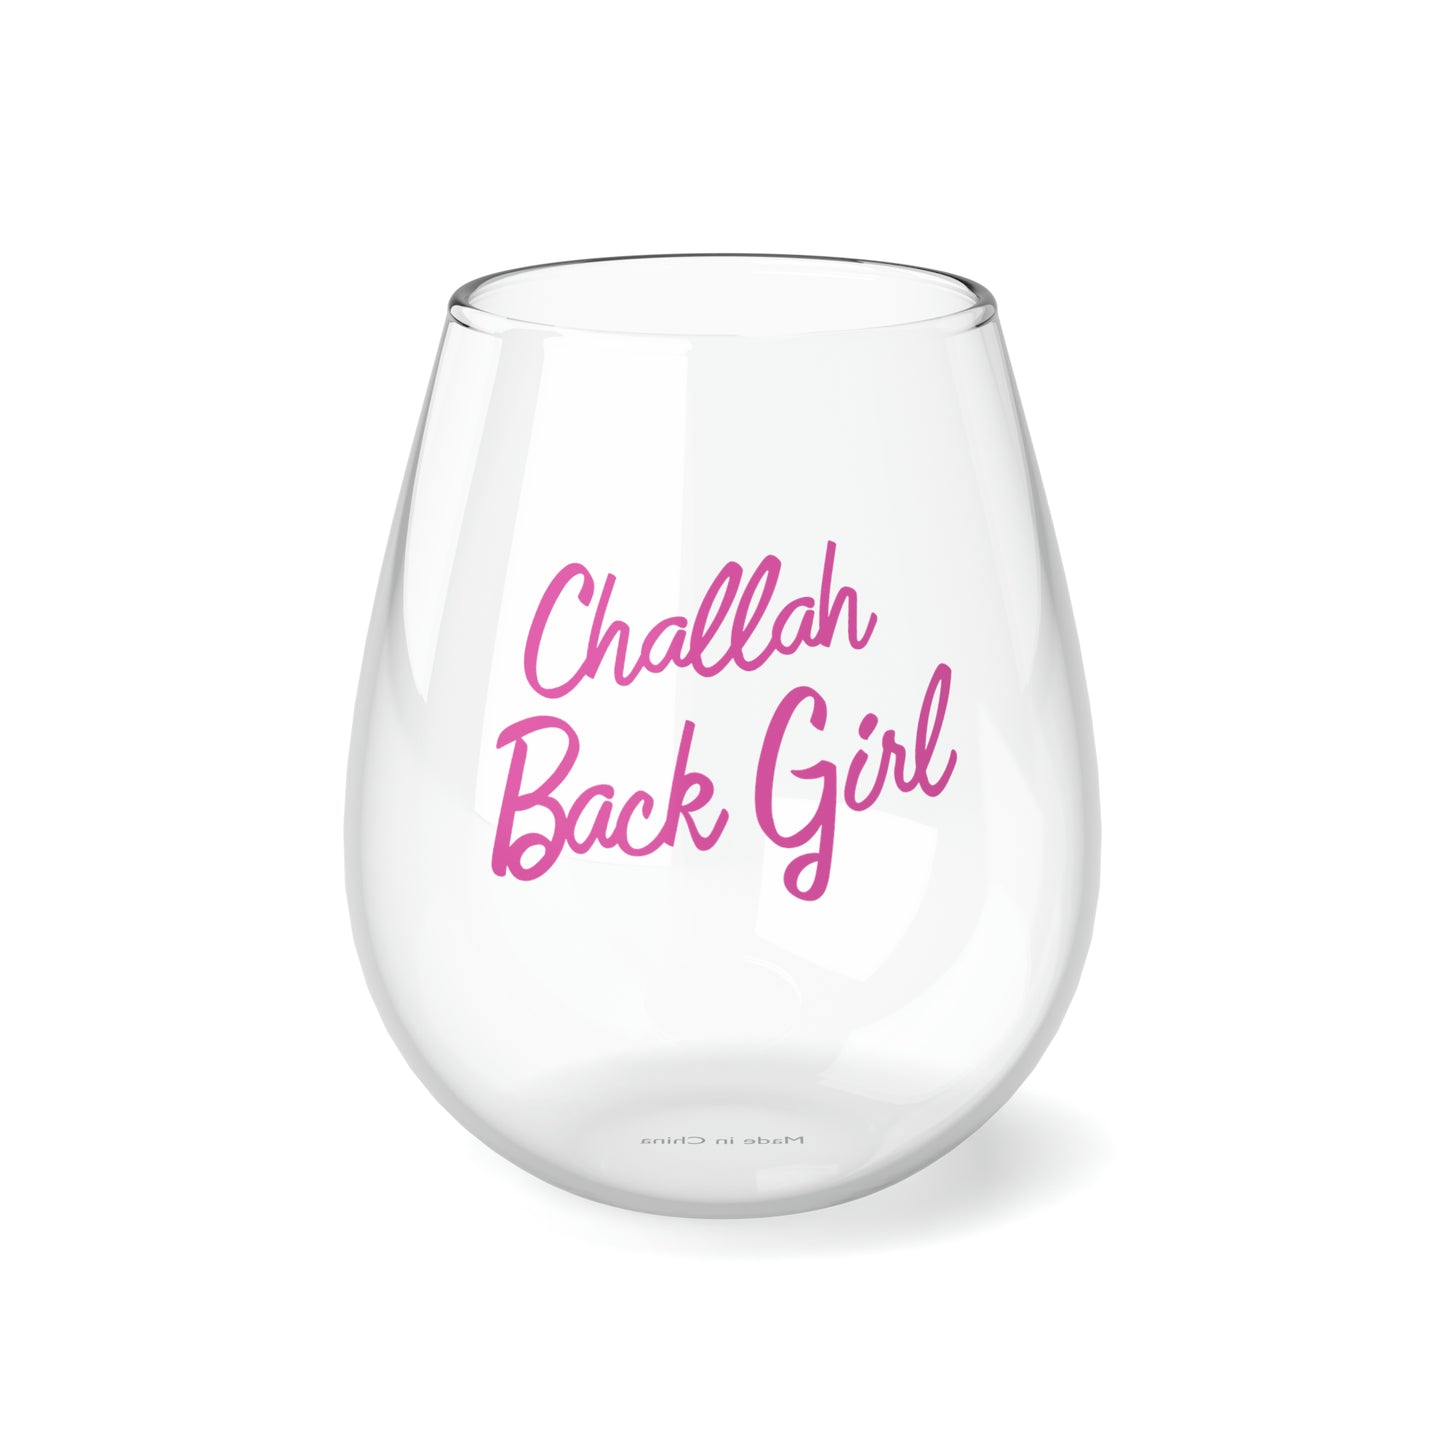 Challah Back Girl Wine Glass